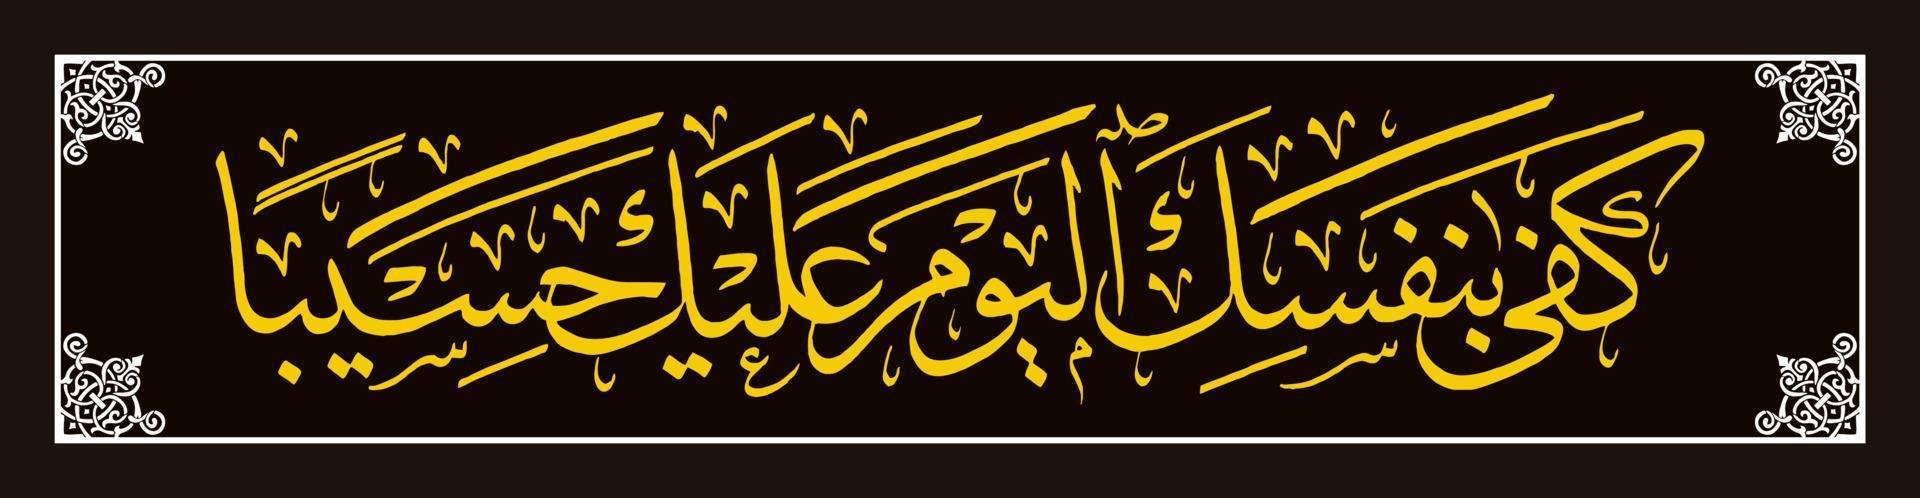 Arabisch kalligrafie, al koran soera al isra 14 , vertalen voldoende jezelf vandaag net zo uw balie. vector